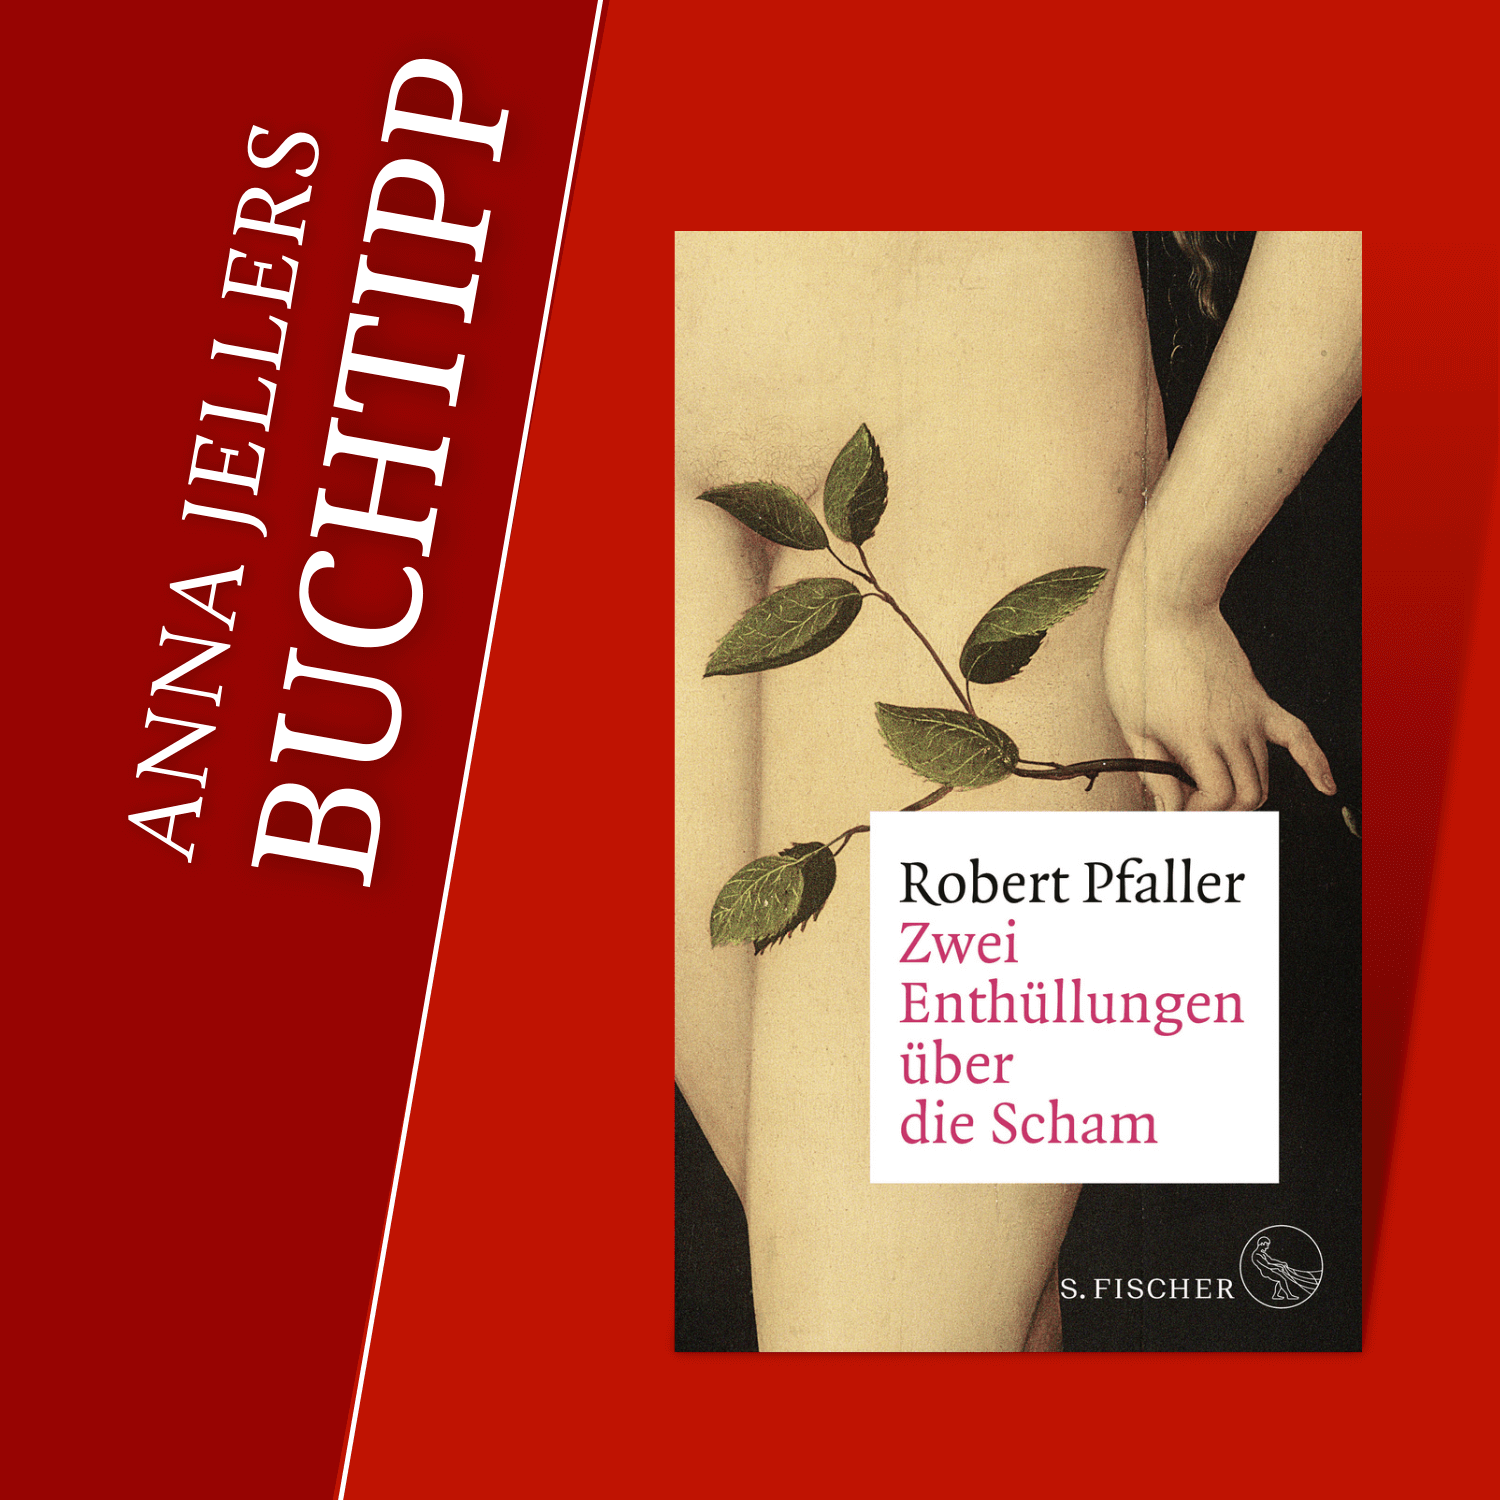 Anna Jellers Buchtipp  Robert Pfaller: Zwei Enthüllungen über die Scham - Anna  Jeller & die Literatur - Podcast